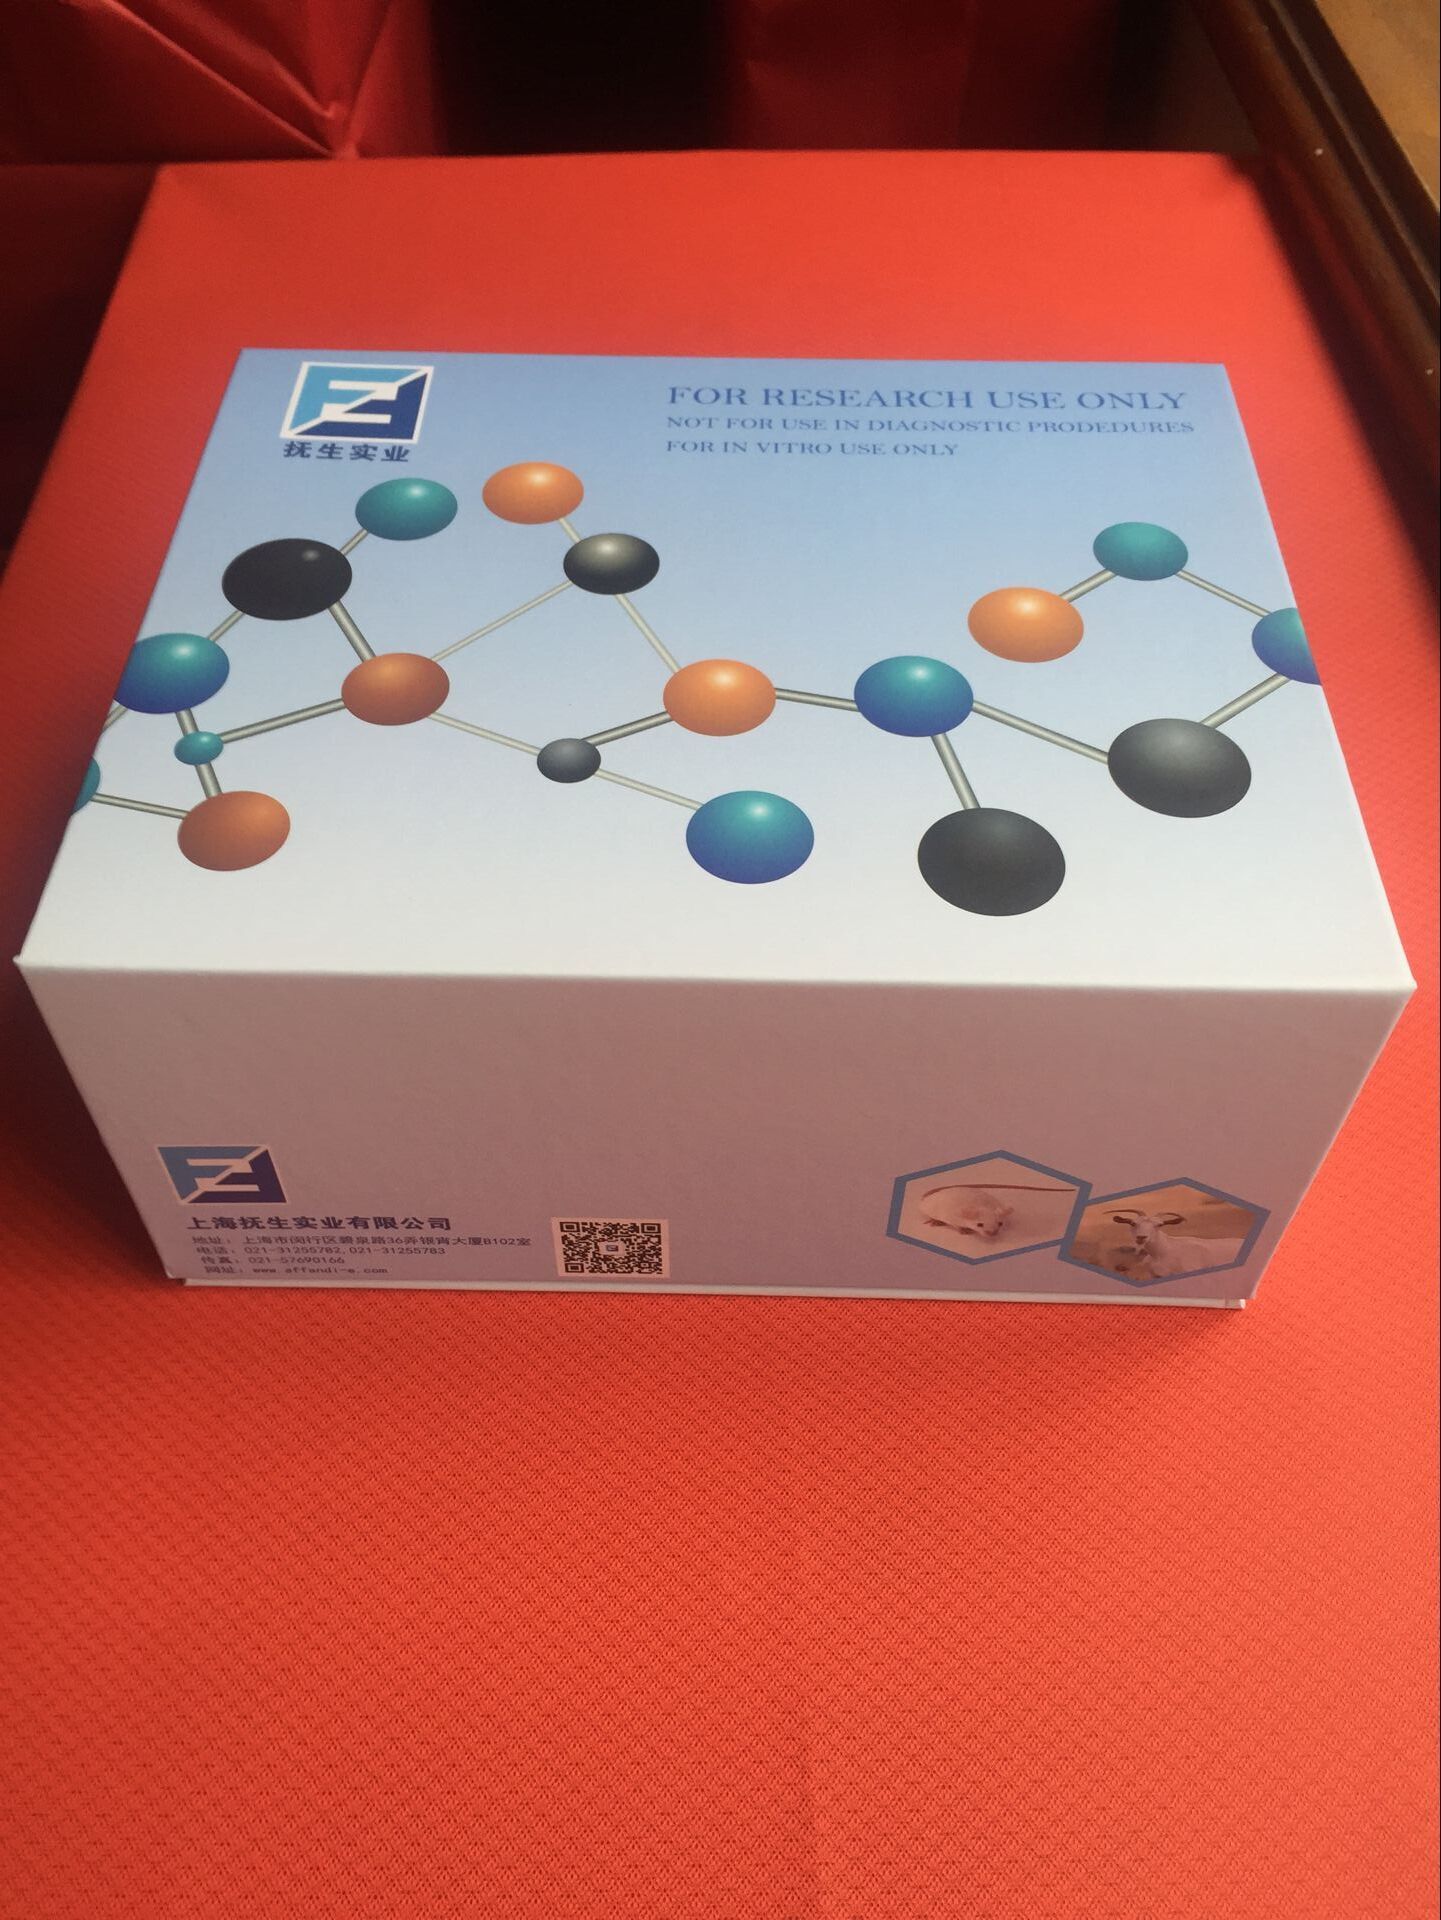 内皮细胞特异分子-1Elisa检测试剂盒说明书